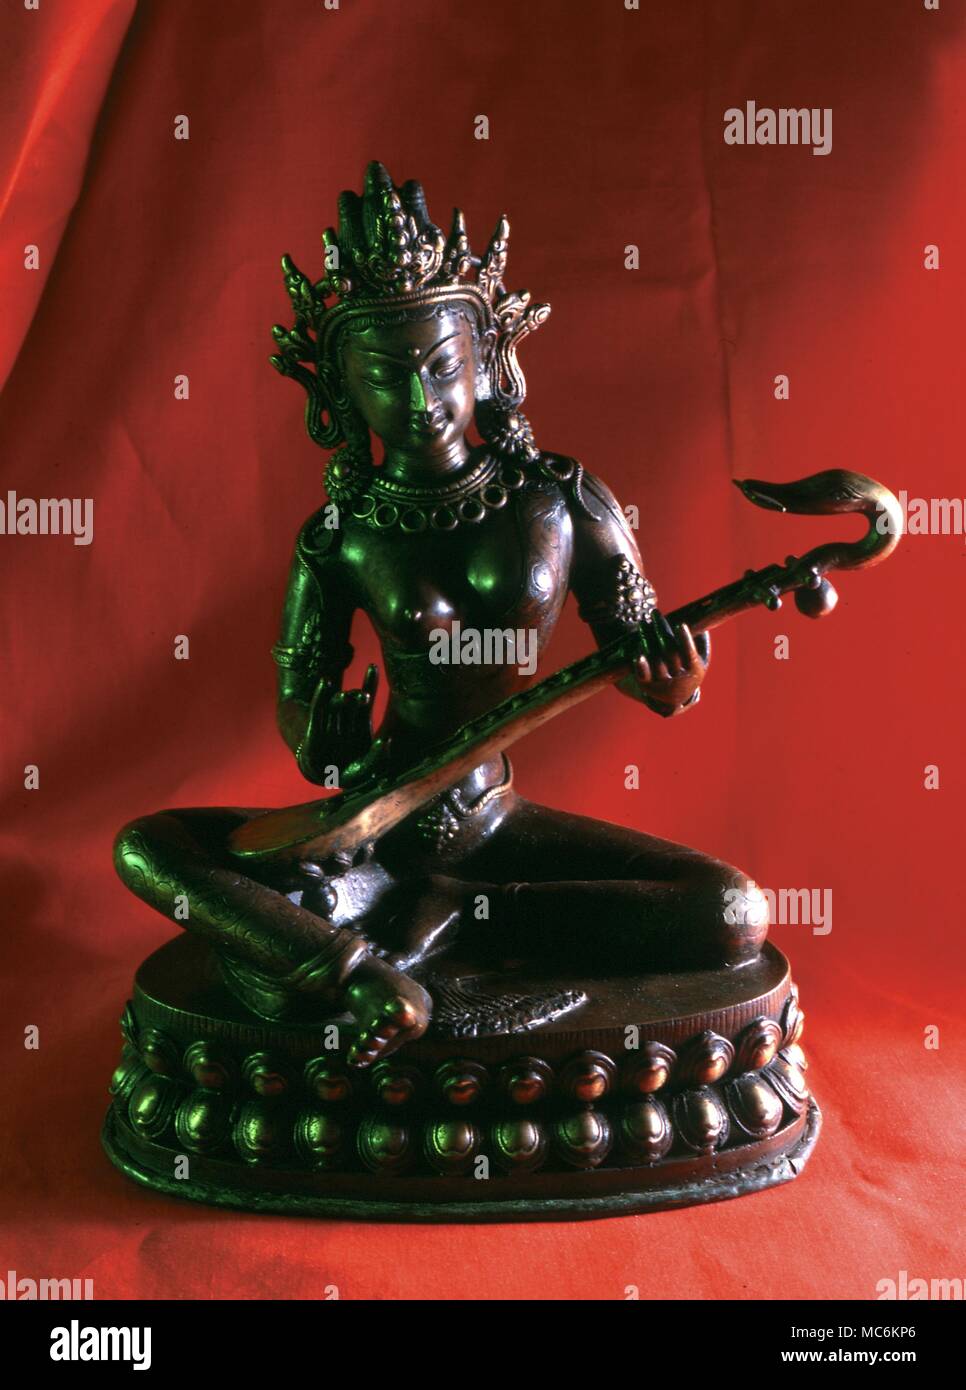 La mythologie Hindoue. Statue en bronze de la déesse hindoue 'Mère'', Saravati. Elle est une ancienne déesse, vraisemblablement un,Védique et son nom l'indique a l'origine elle était une déesse de l'eau. ' Banque D'Images